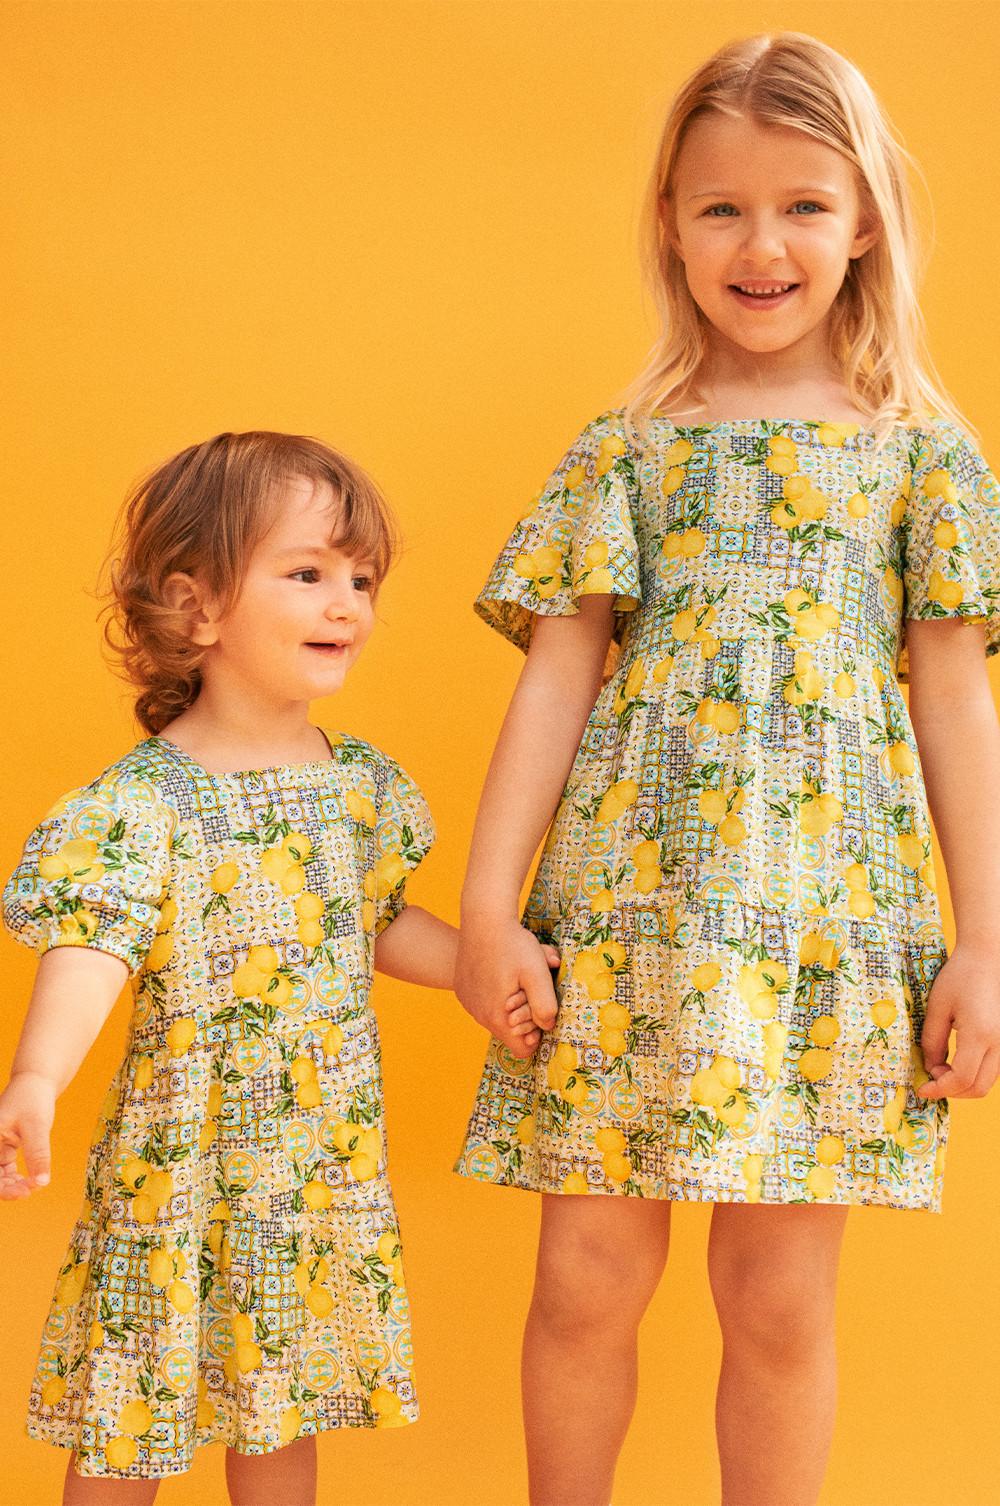 Children wearing lemon print dresses